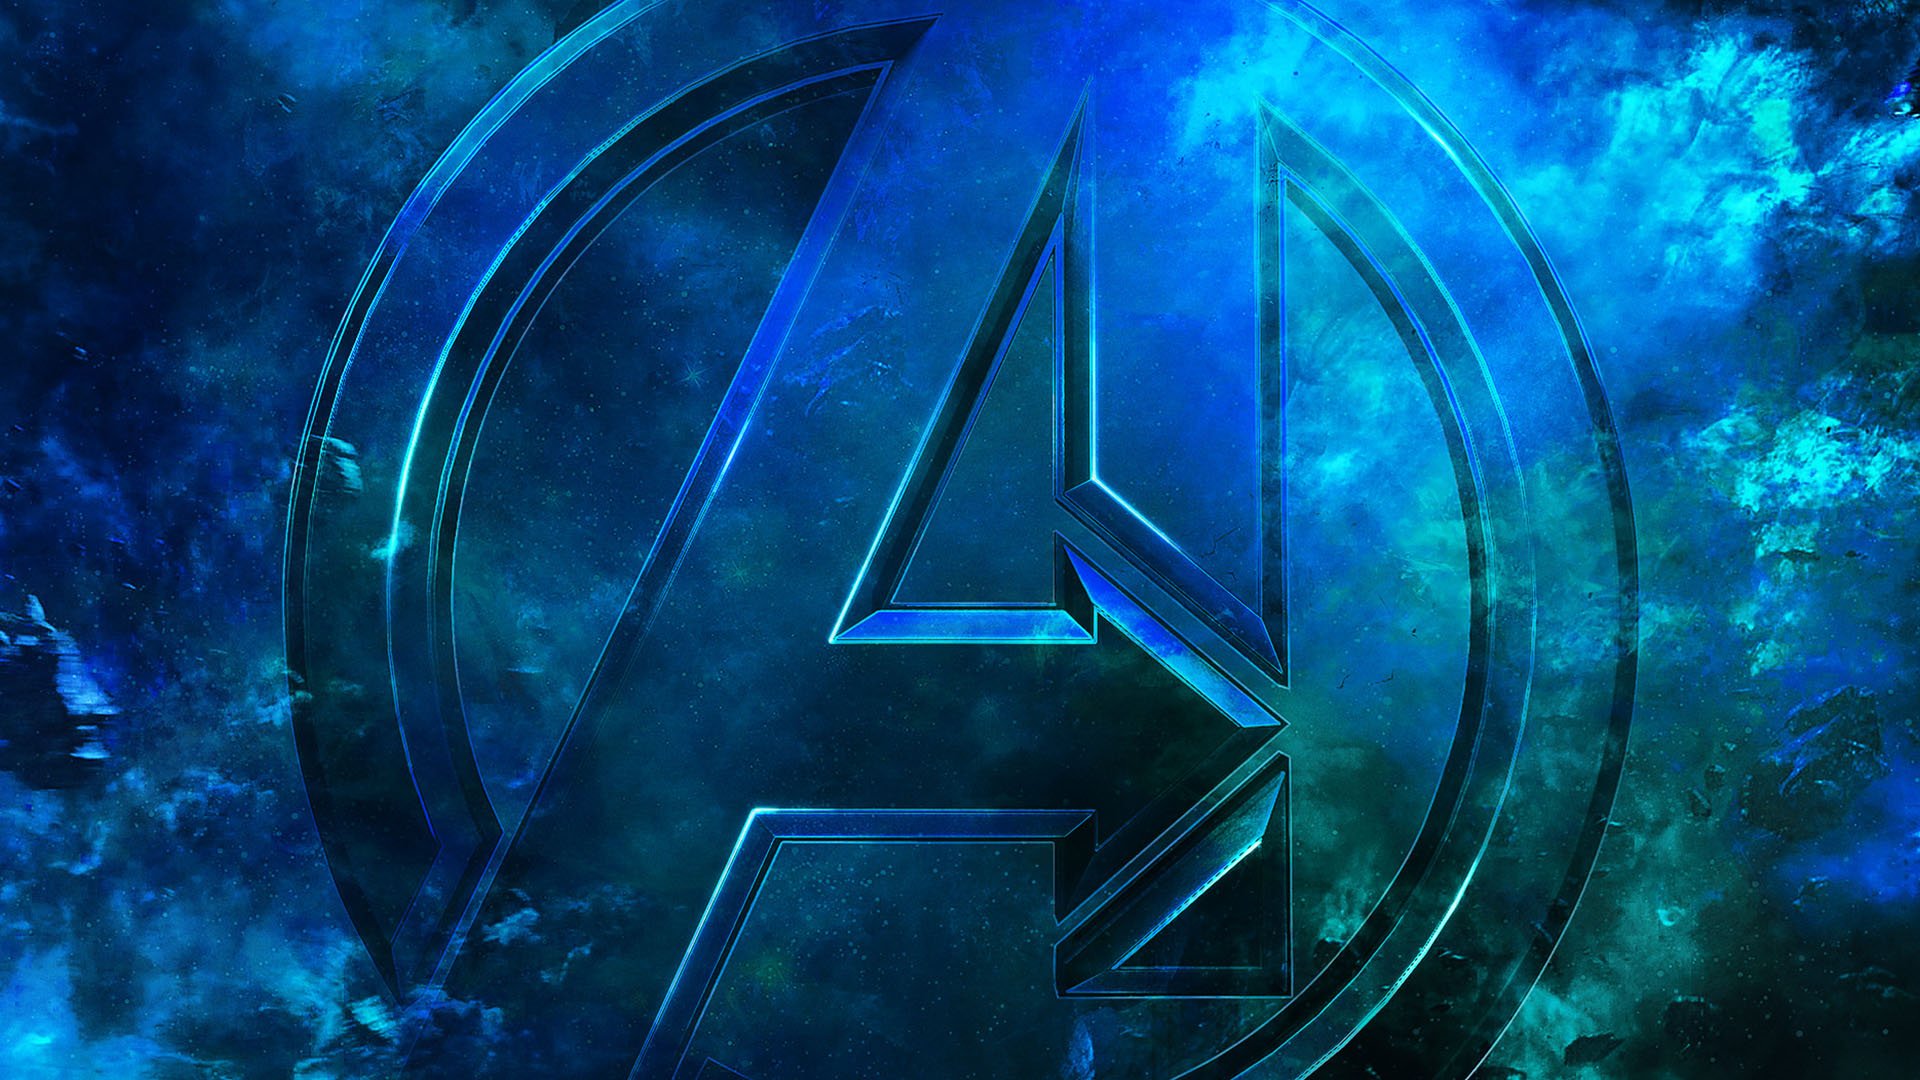 Marvel Studios đang tạo ra những bức ảnh nền rất ấn tượng về Avengers trên Twitter. Đếm từng nhân vật đang được \